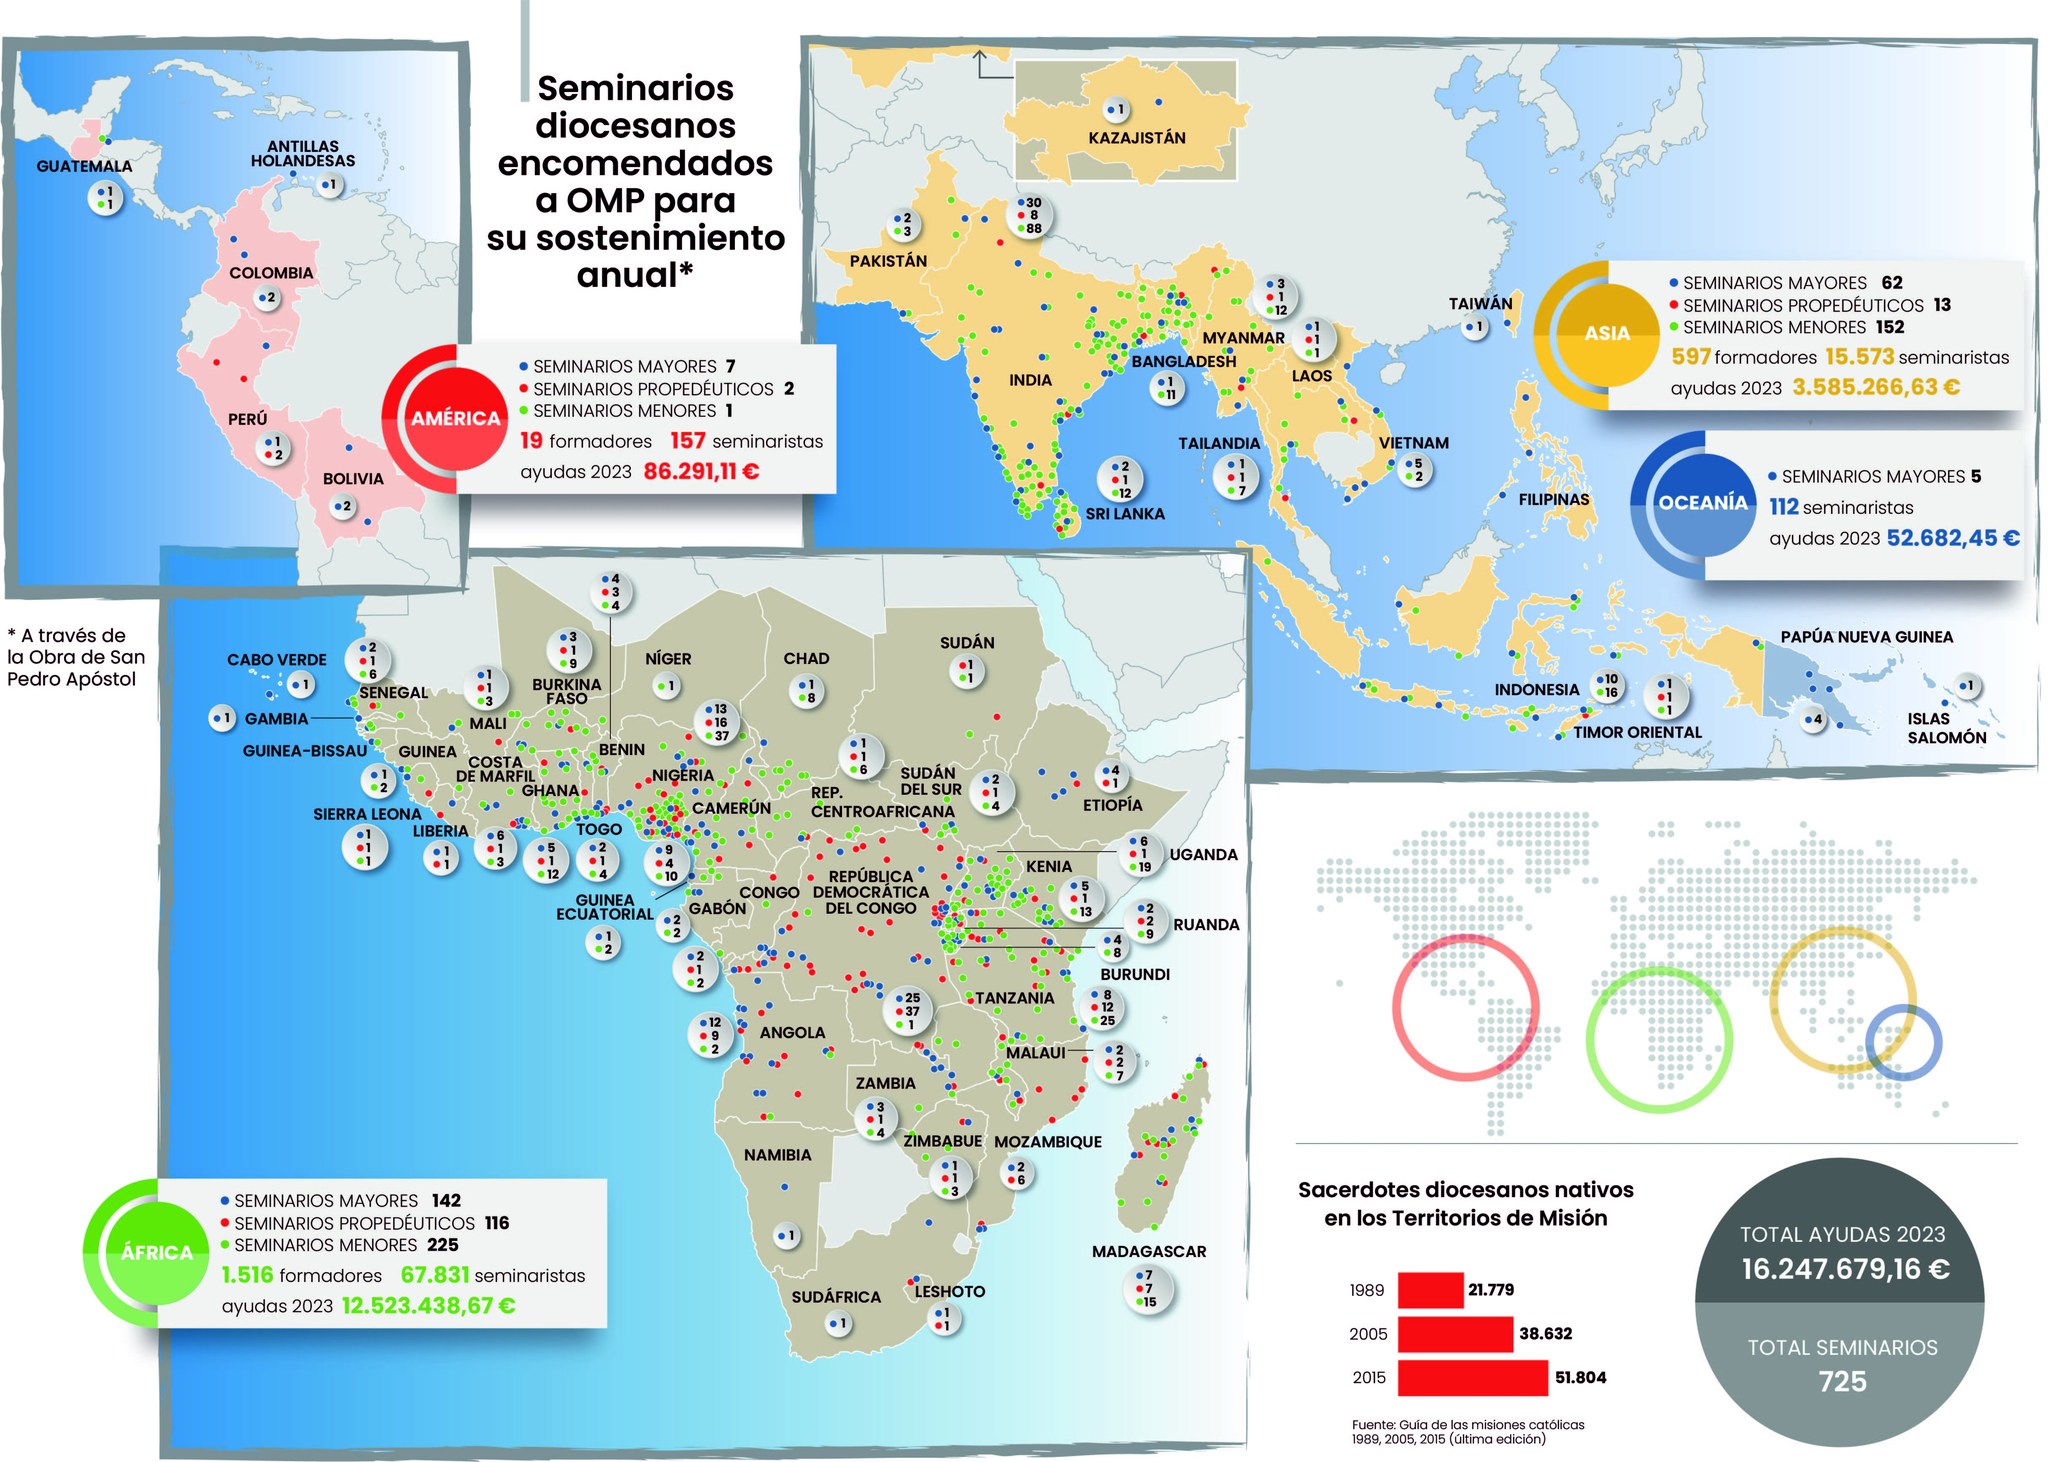 Mapa que marca los seminarios de los territorios de misiones